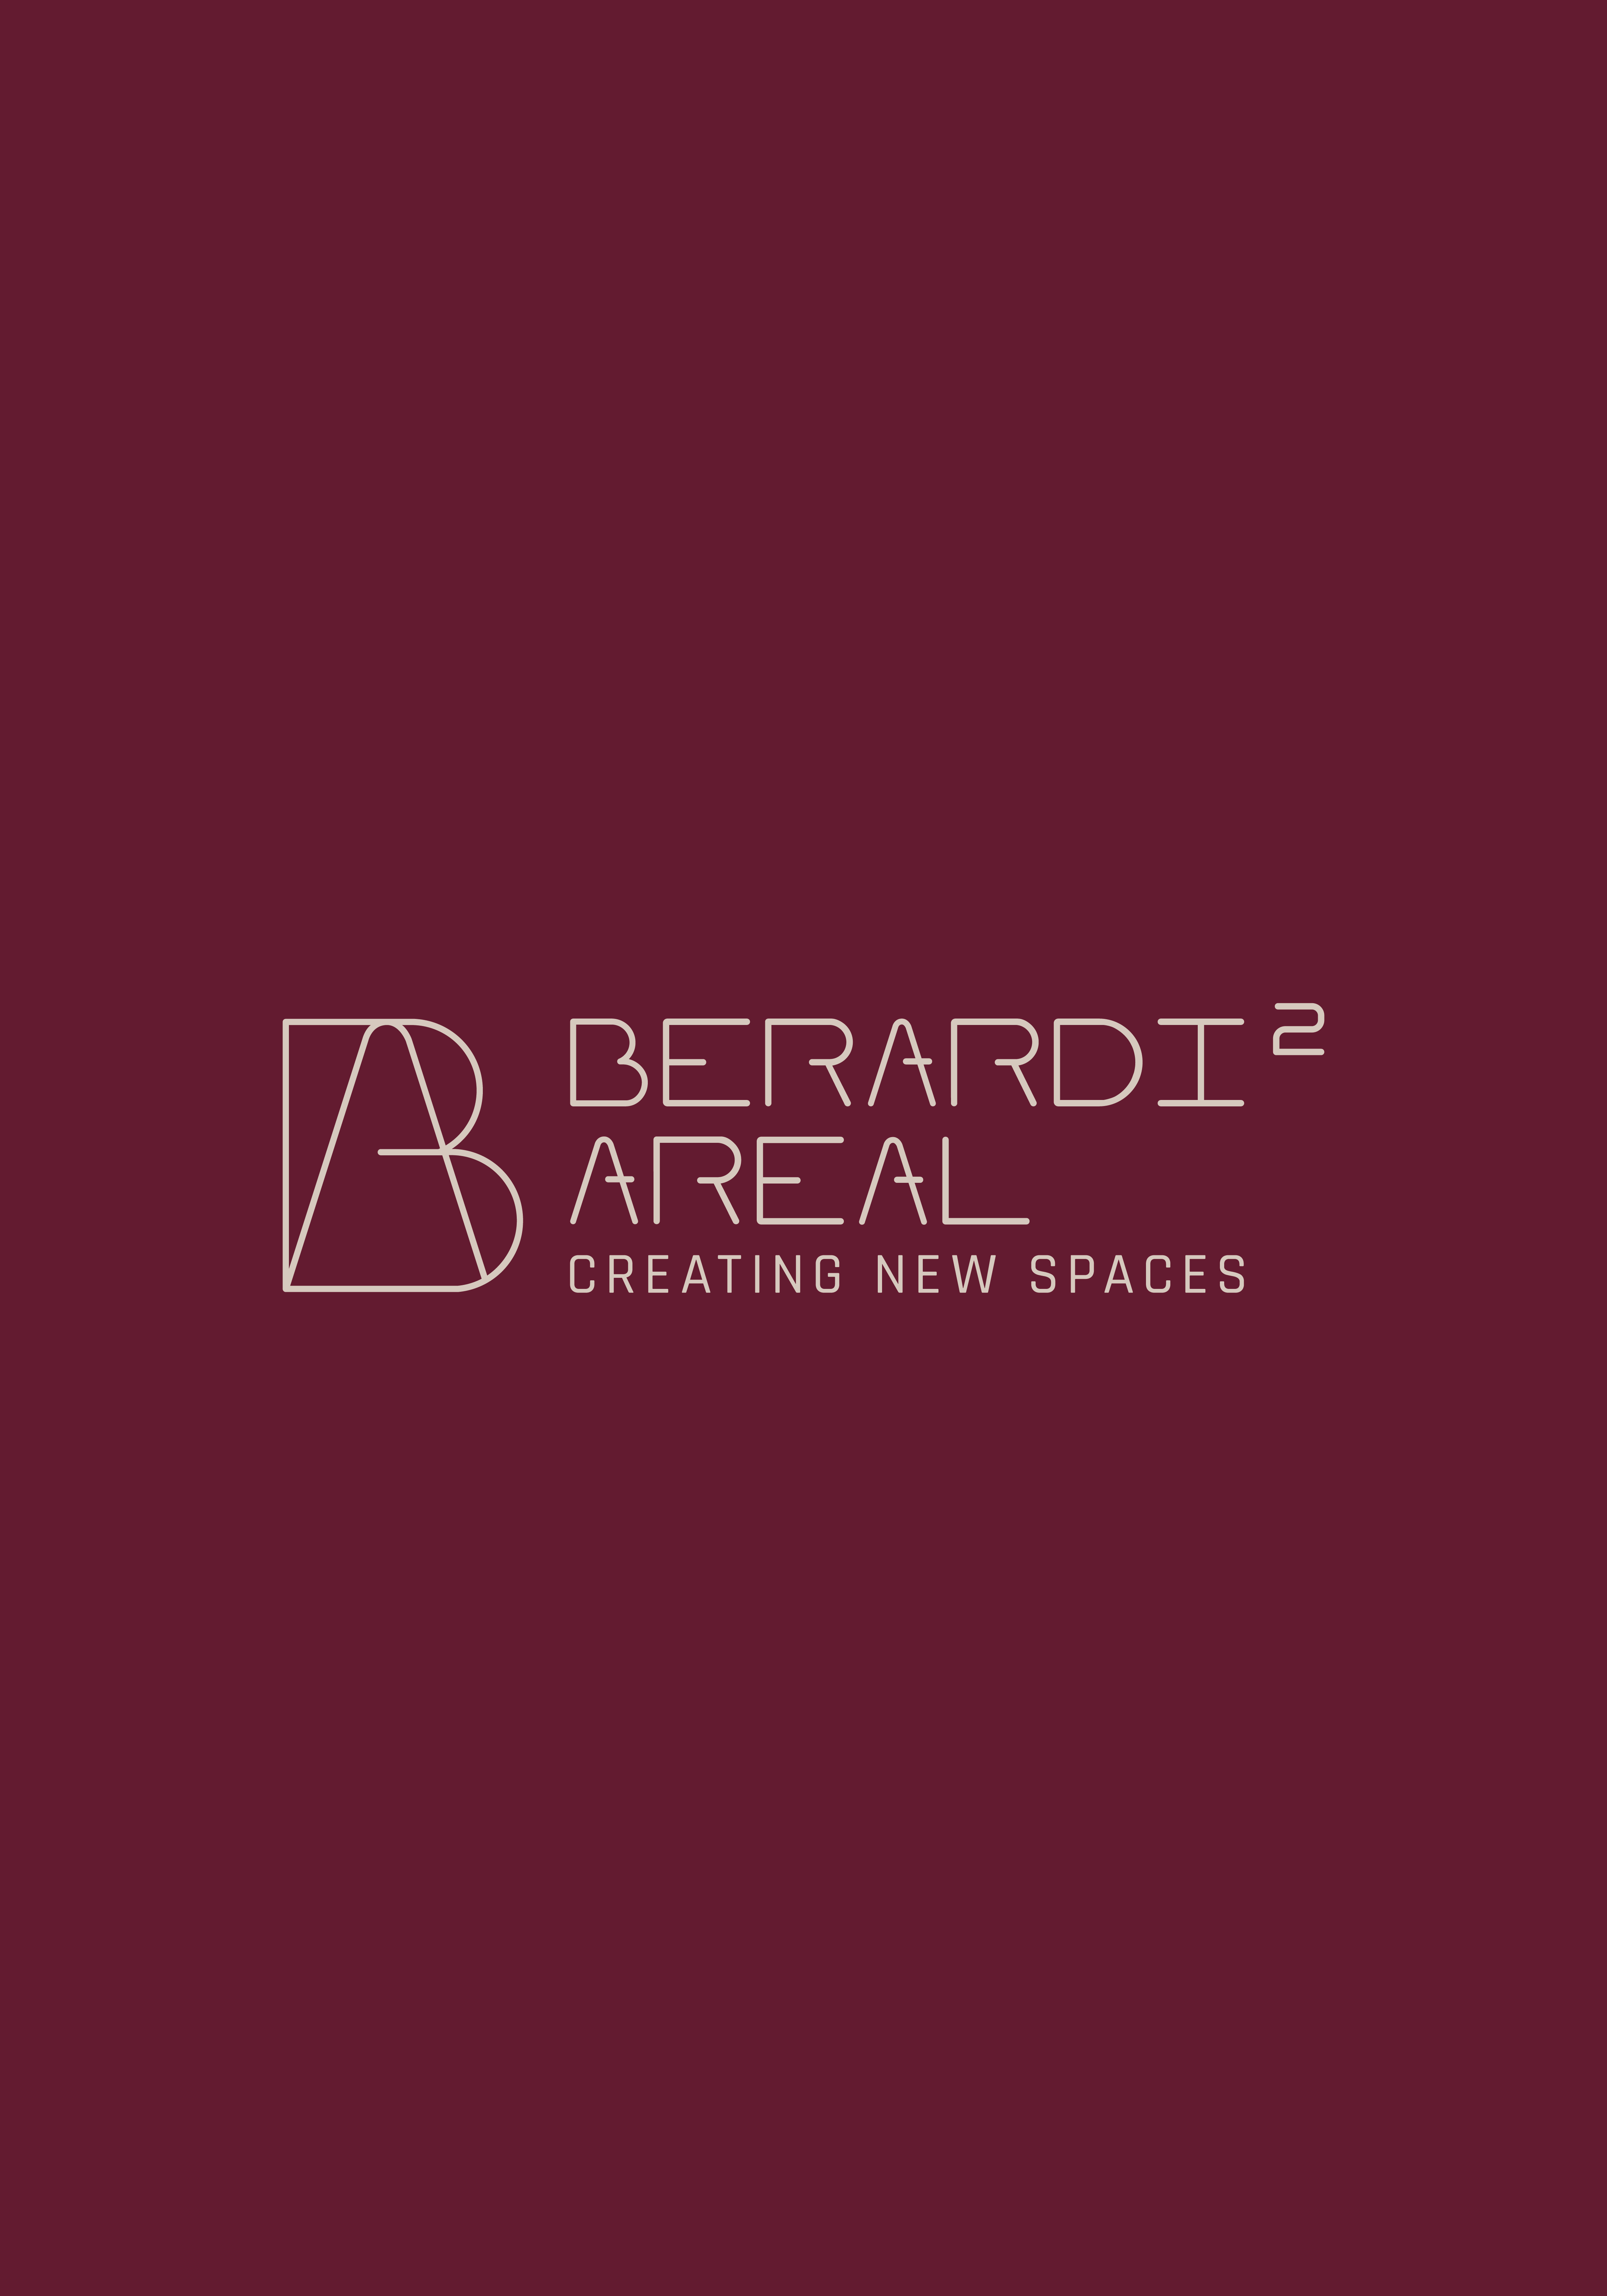 Das Logo des Berardi Areals 2, welches durch ein Logodesign für kleine Unternehmen entwickelt wurde.